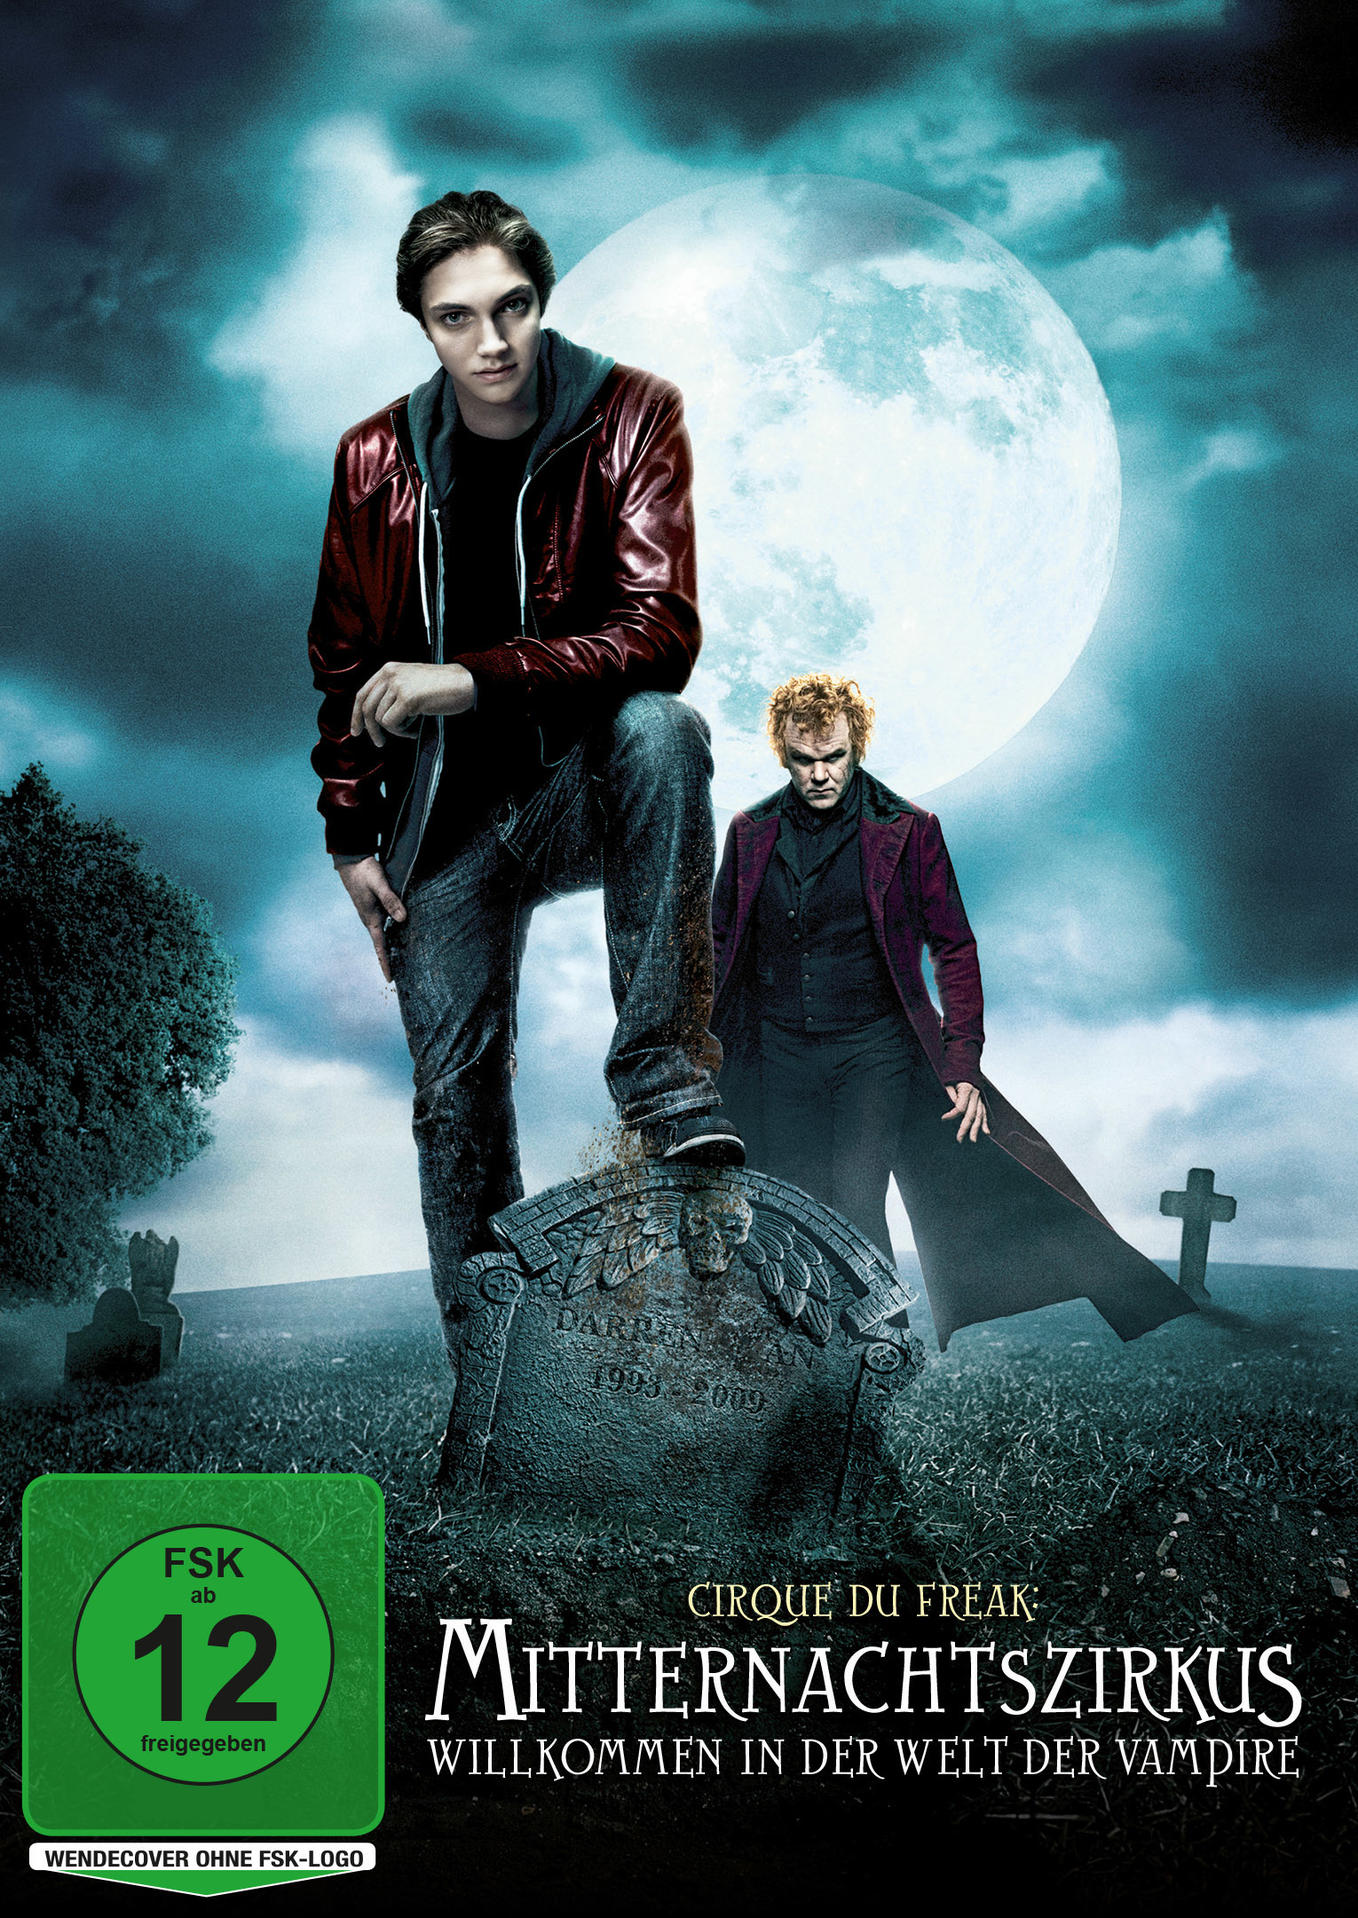 Vampire in der der Willkommen DVD Mitternachtszirkus: Welt